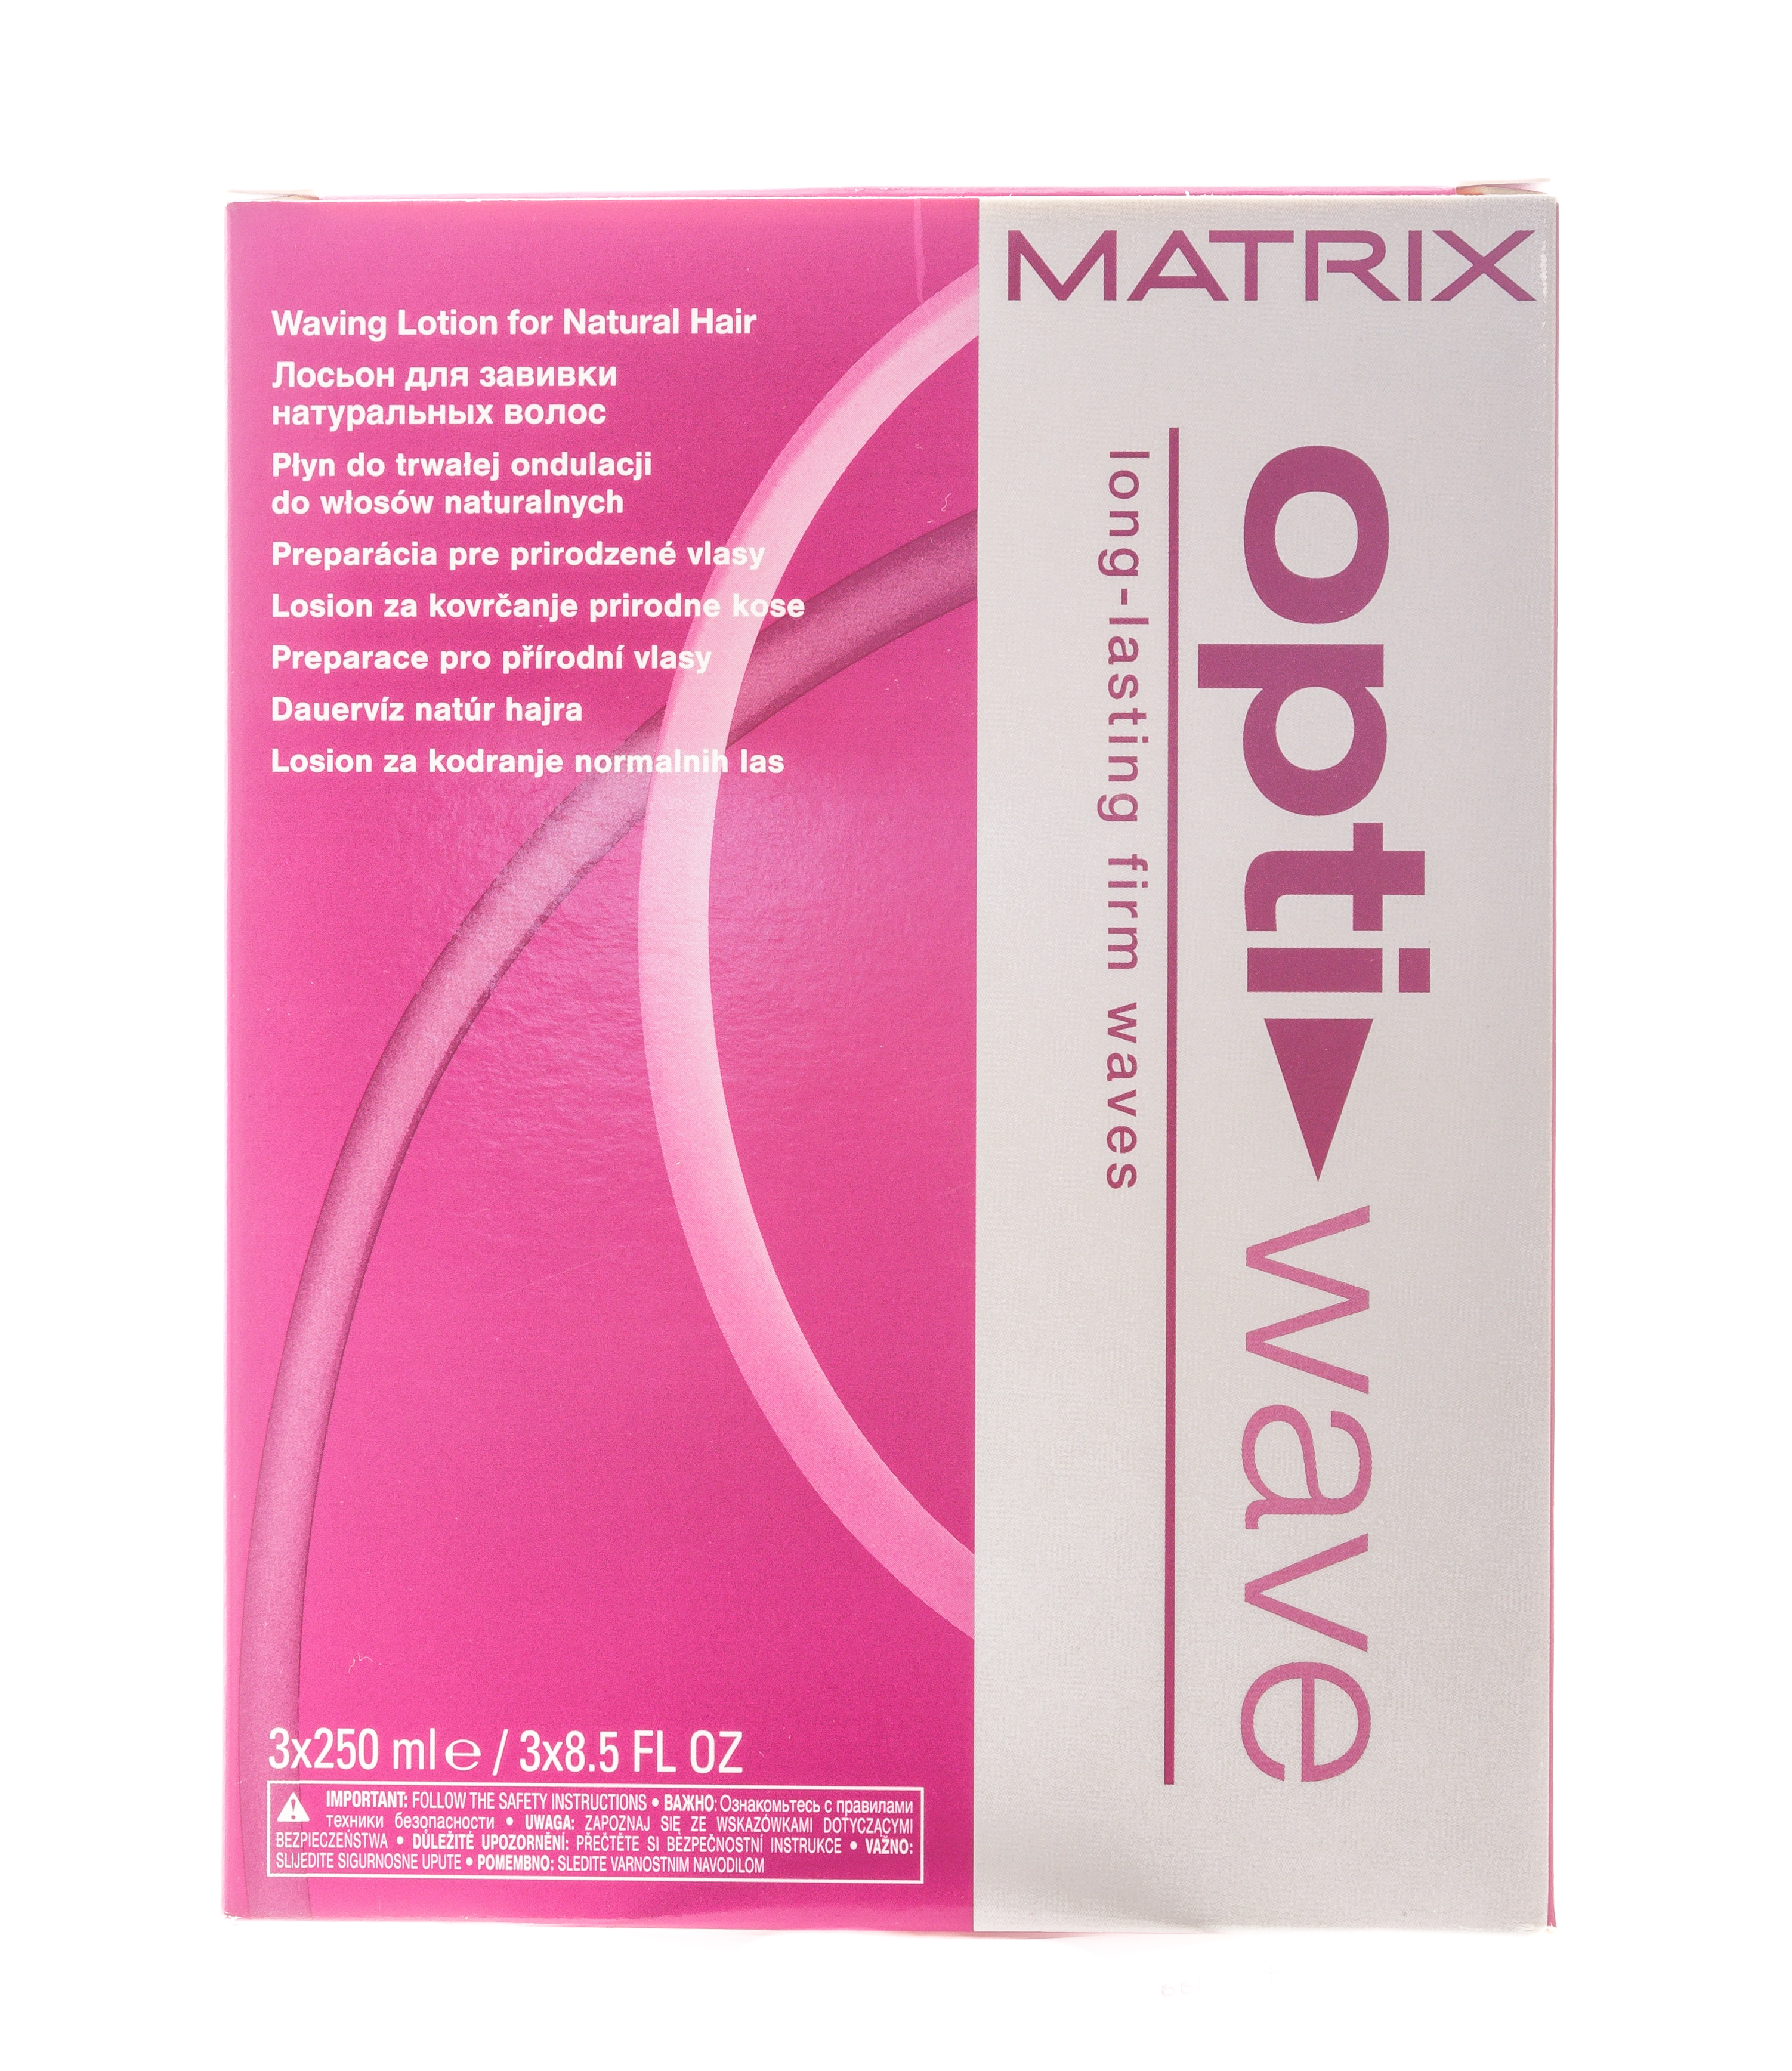 Matrix Лосьон для завивки натуральных волос, 3 х 250 мл (Matrix, Химическая завивка) matrix opti wave lotion лосьон для завивки натуральных волос 3 х 250 мл